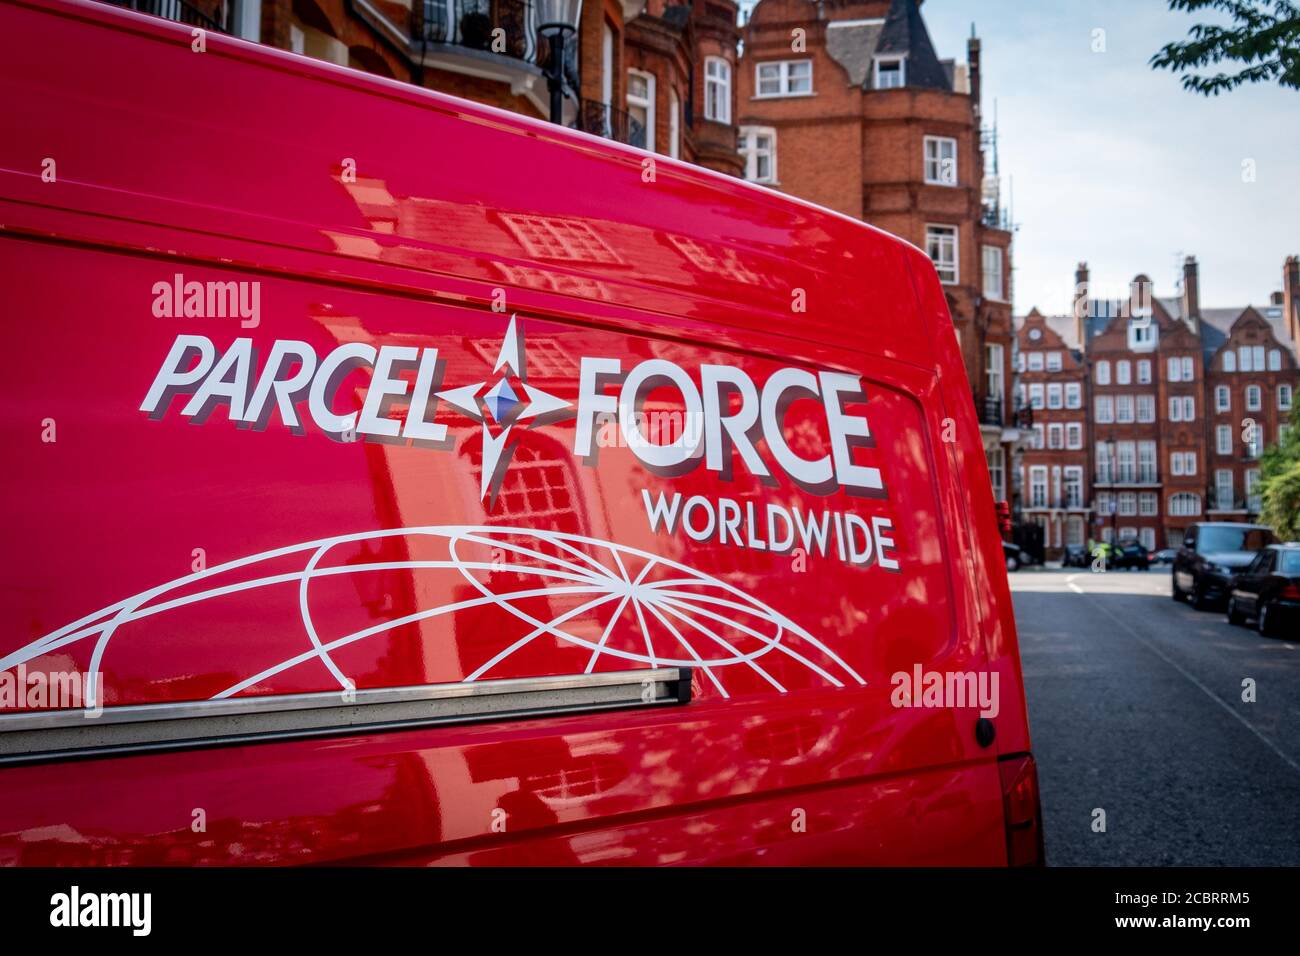 Londres- Parcelforce Worldwide livraison van, un service de courrier britannique Banque D'Images